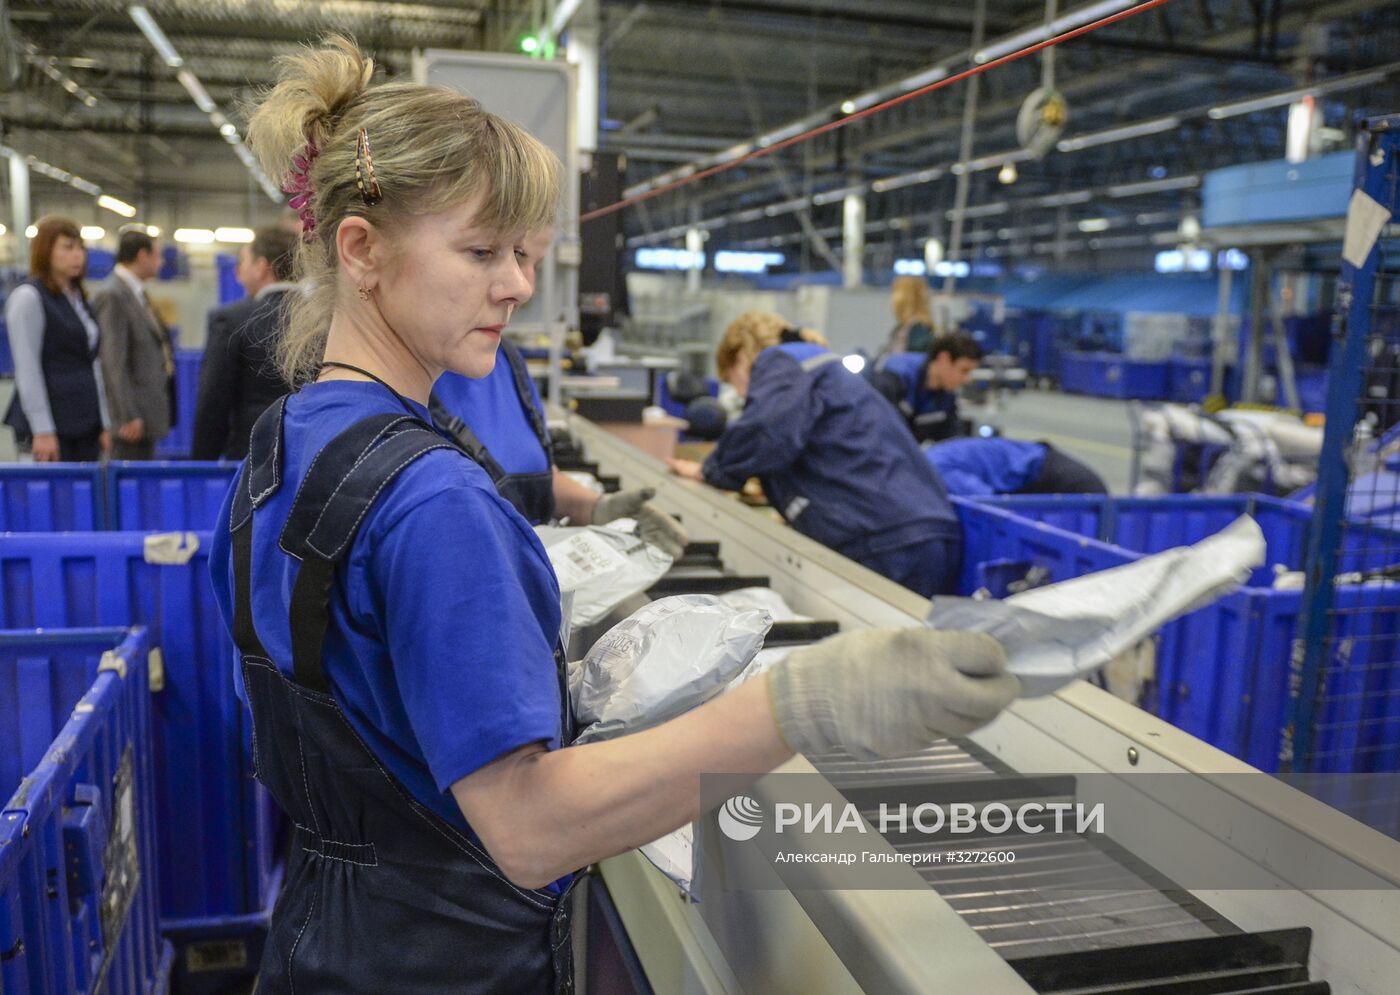 Запуск новой сортировочной линии "Почты России" в Санкт-Петербурге